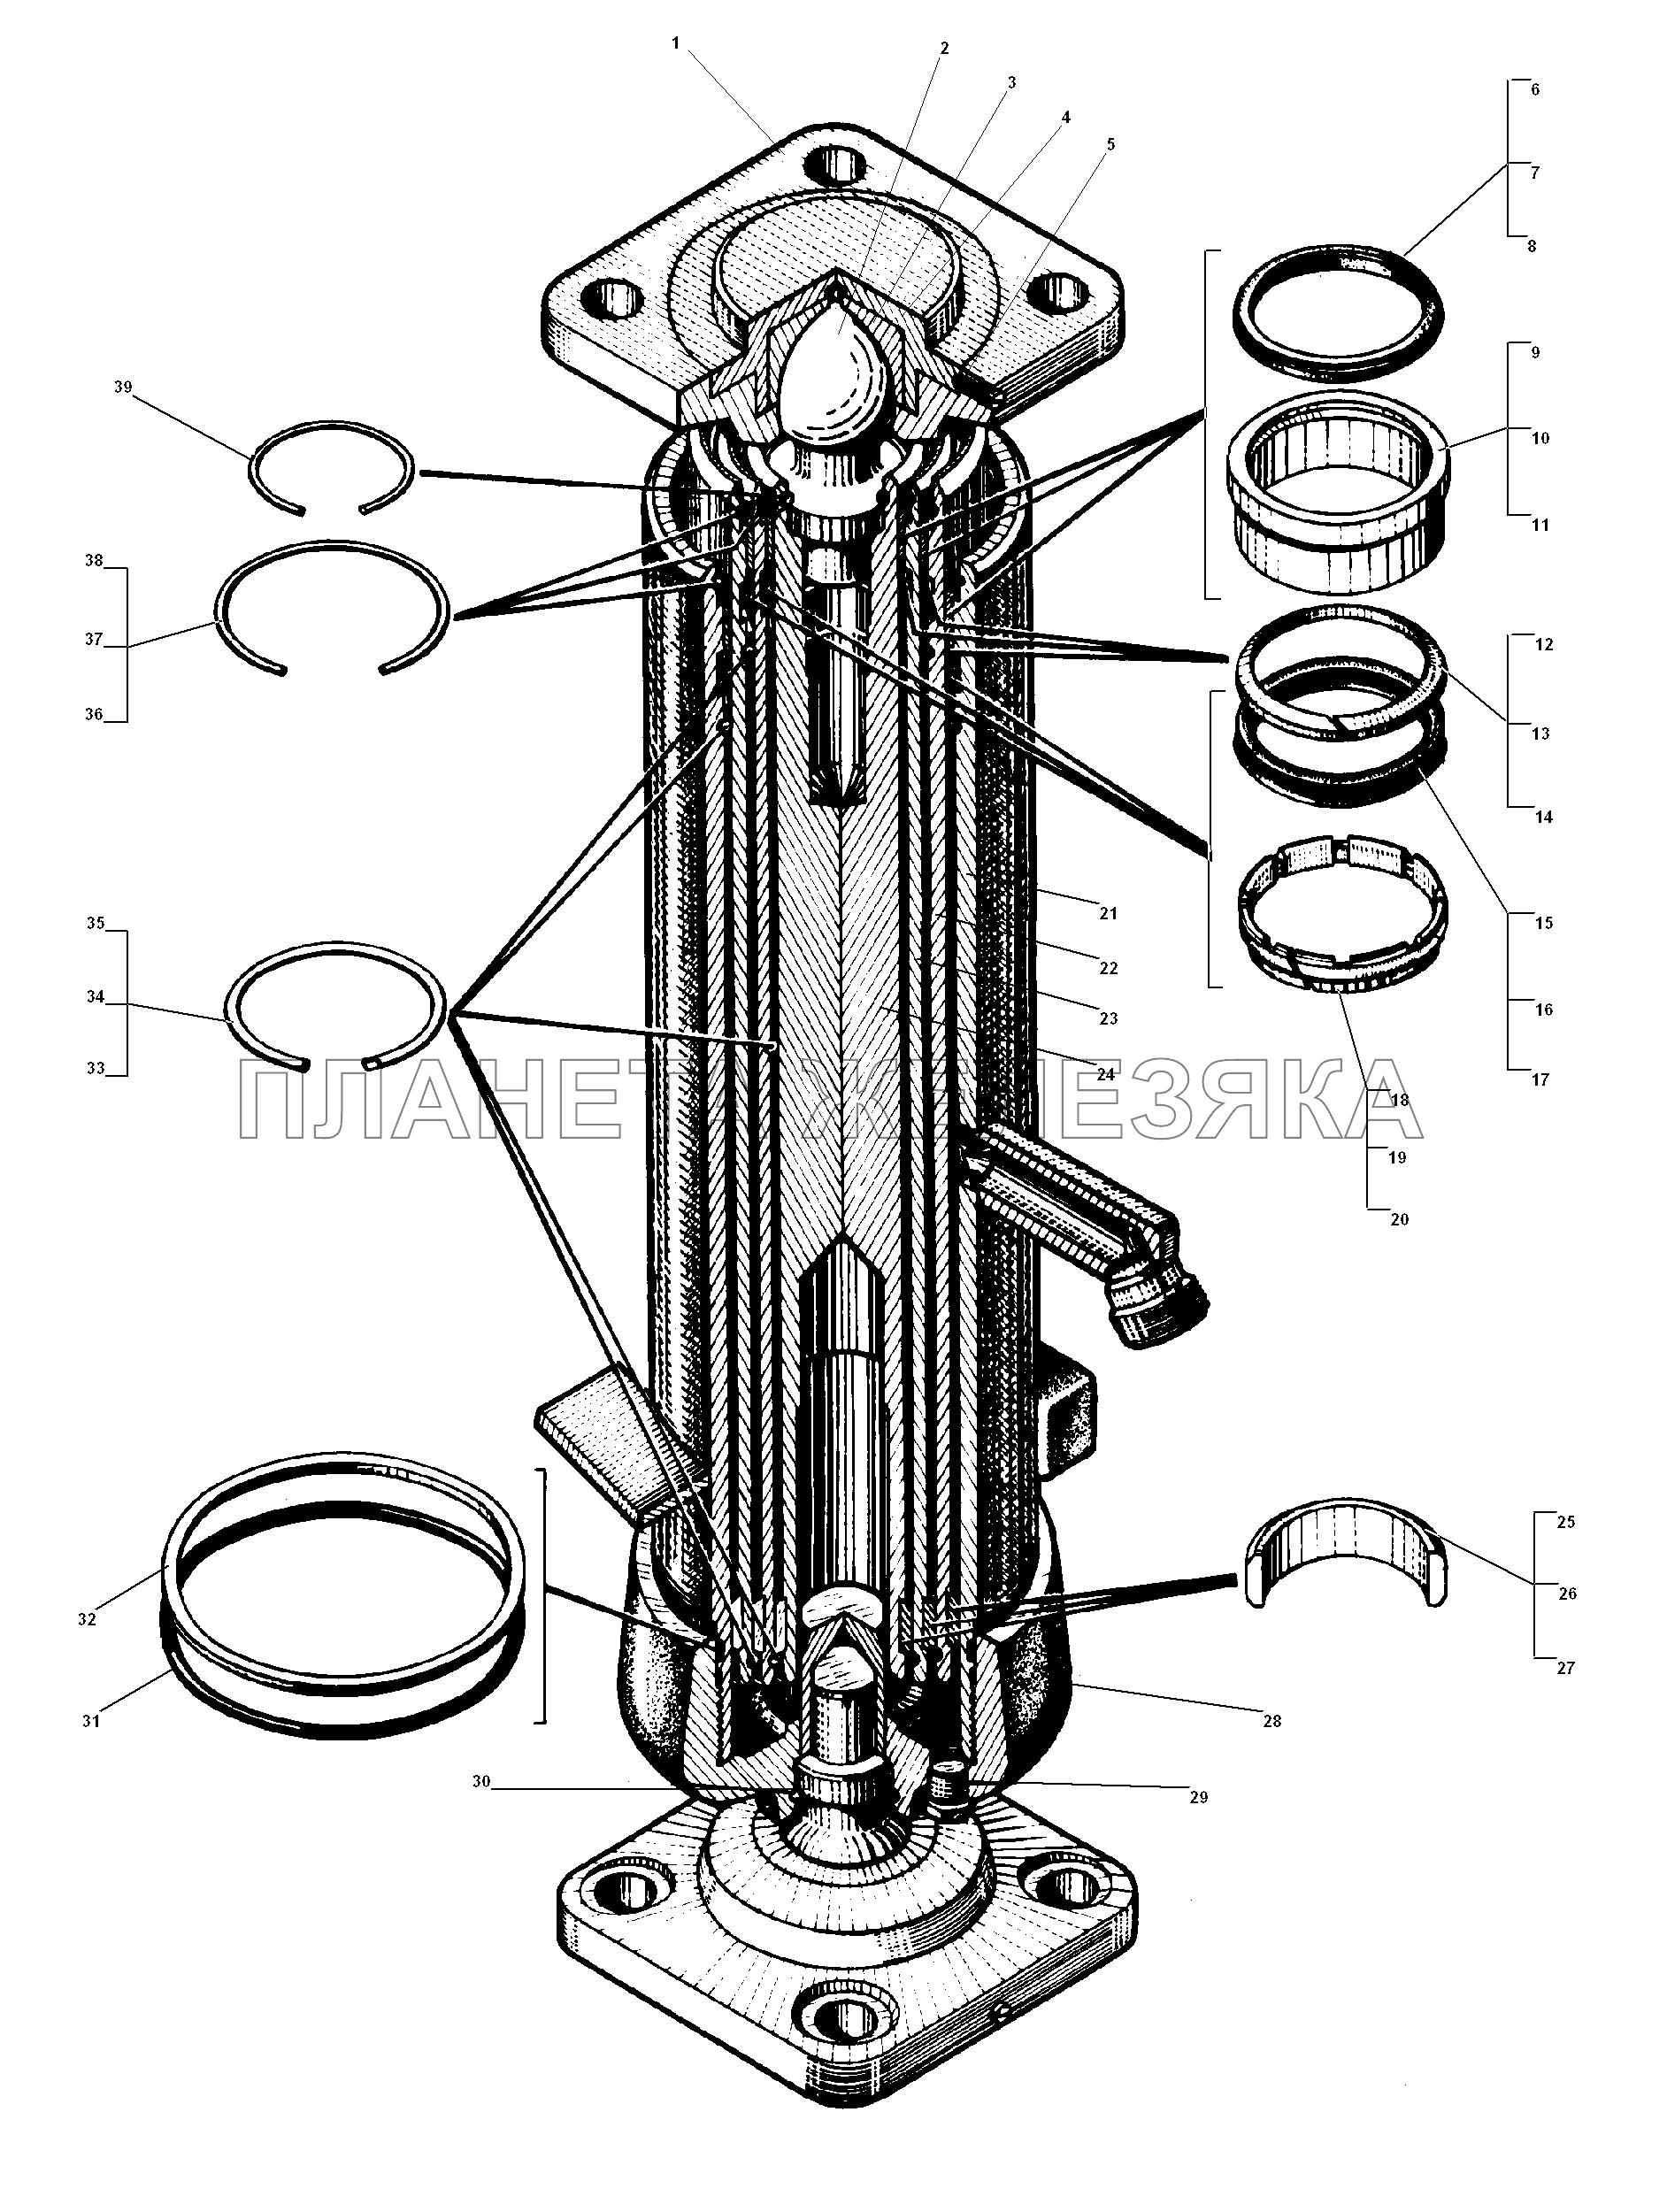 Гидроцилиндр подъема платформы УРАЛ-5557-31